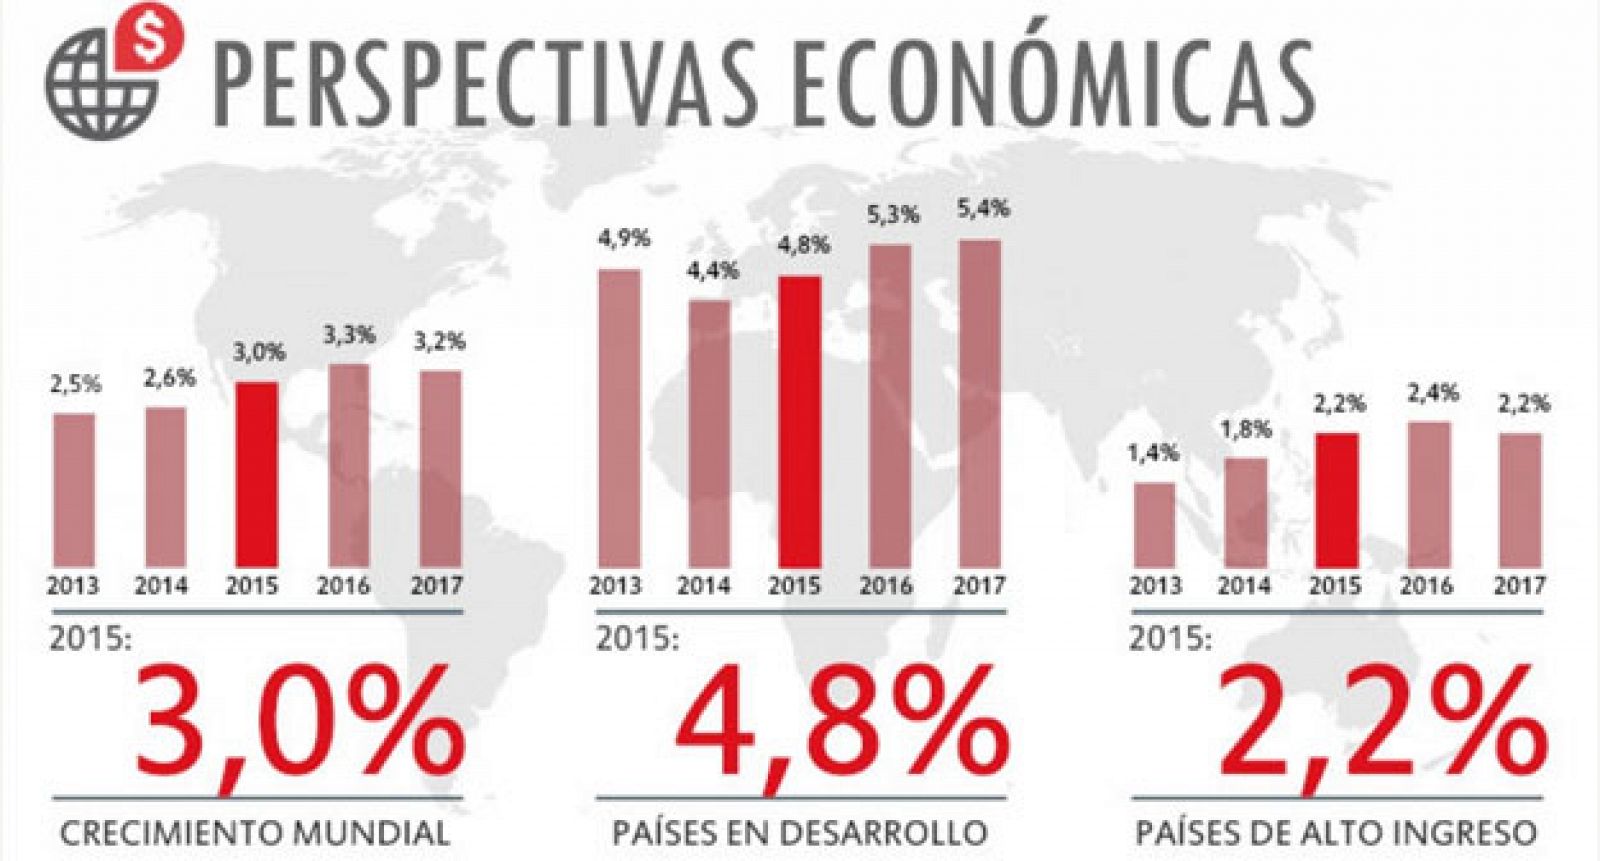 Perspectivas económicas del Banco Mundial para los años 2015, 2016 y 2017.